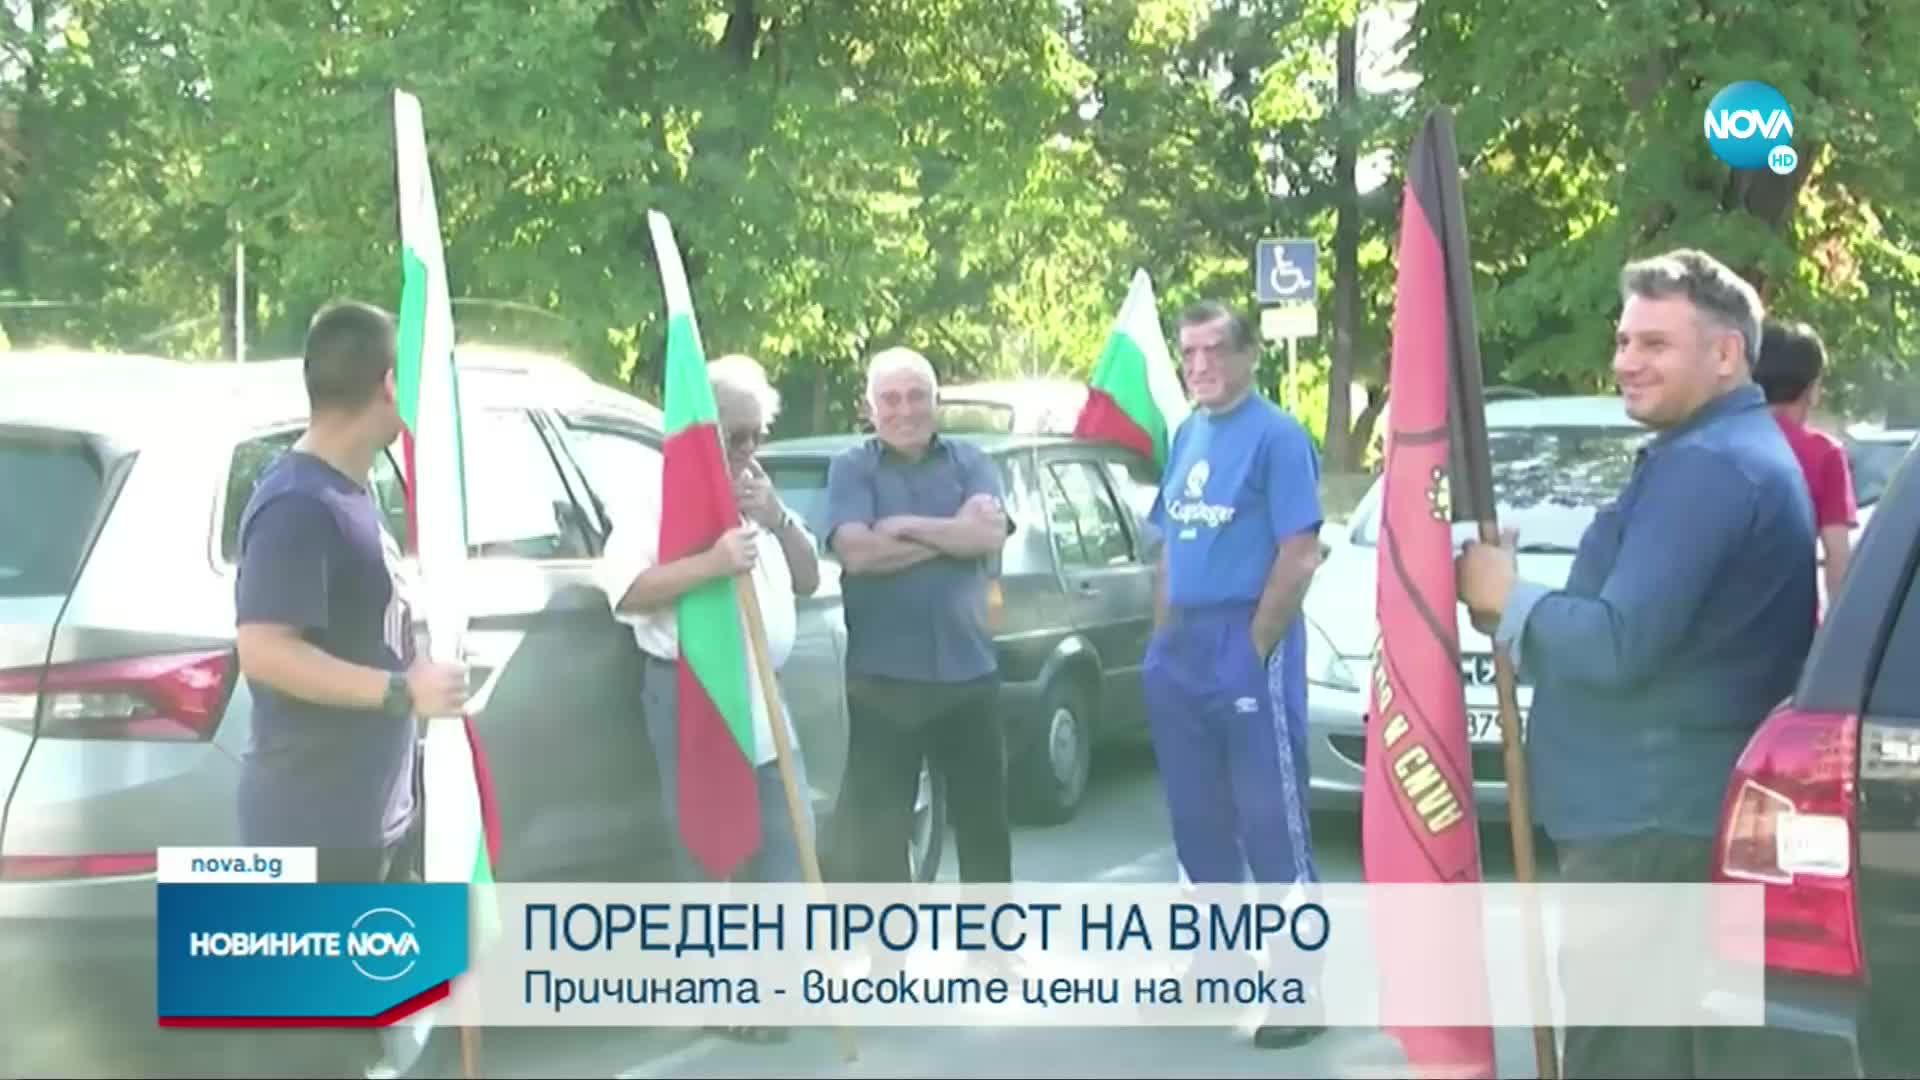 ВМРО организира протестен автопоход срещу високите цени на тока